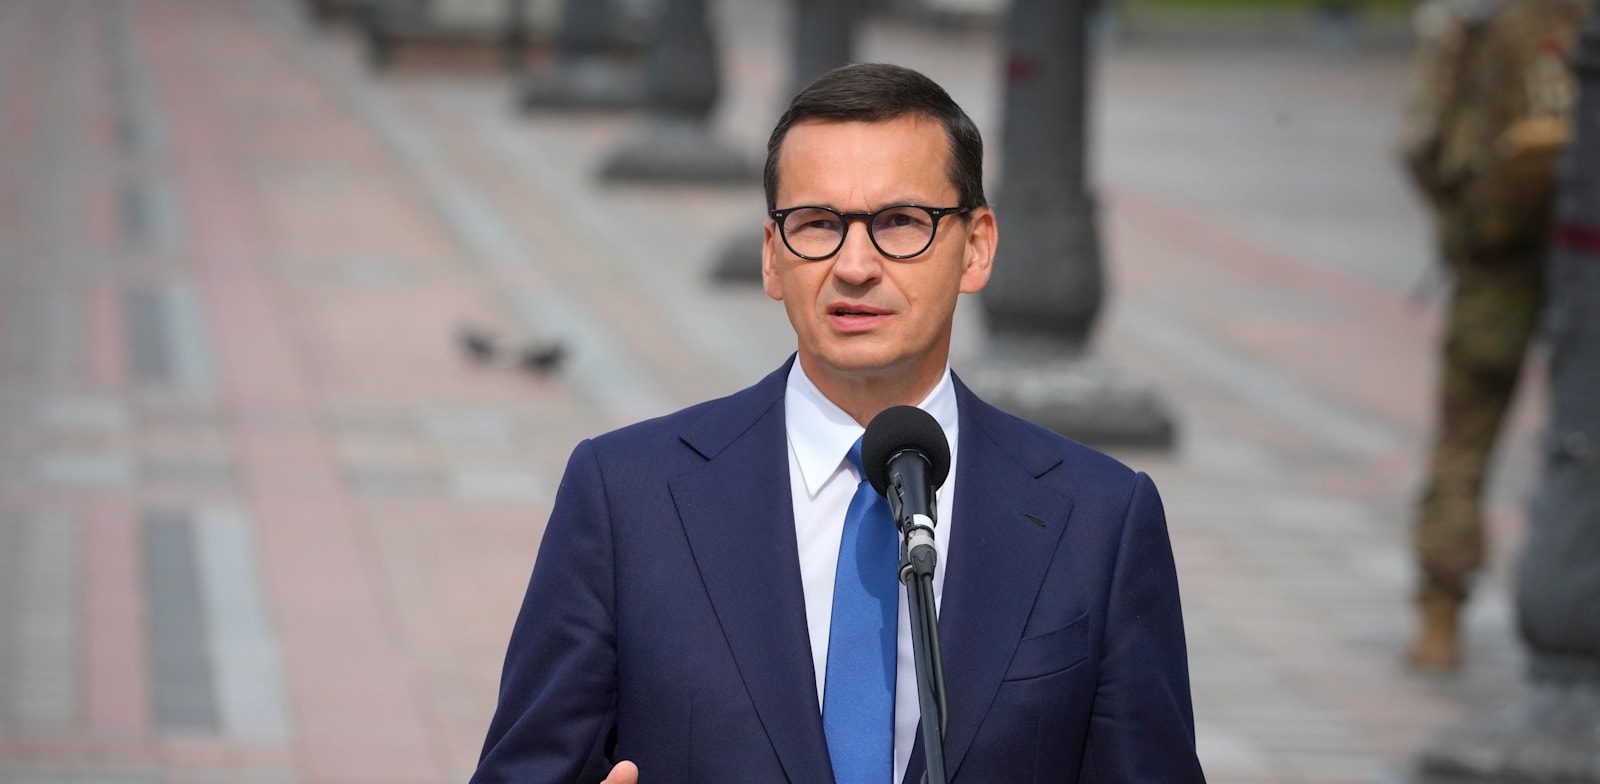 ראש ממשלת פולין, מטאוש מורבייצקי / צילום: Associated Press, Efrem Lukatsky